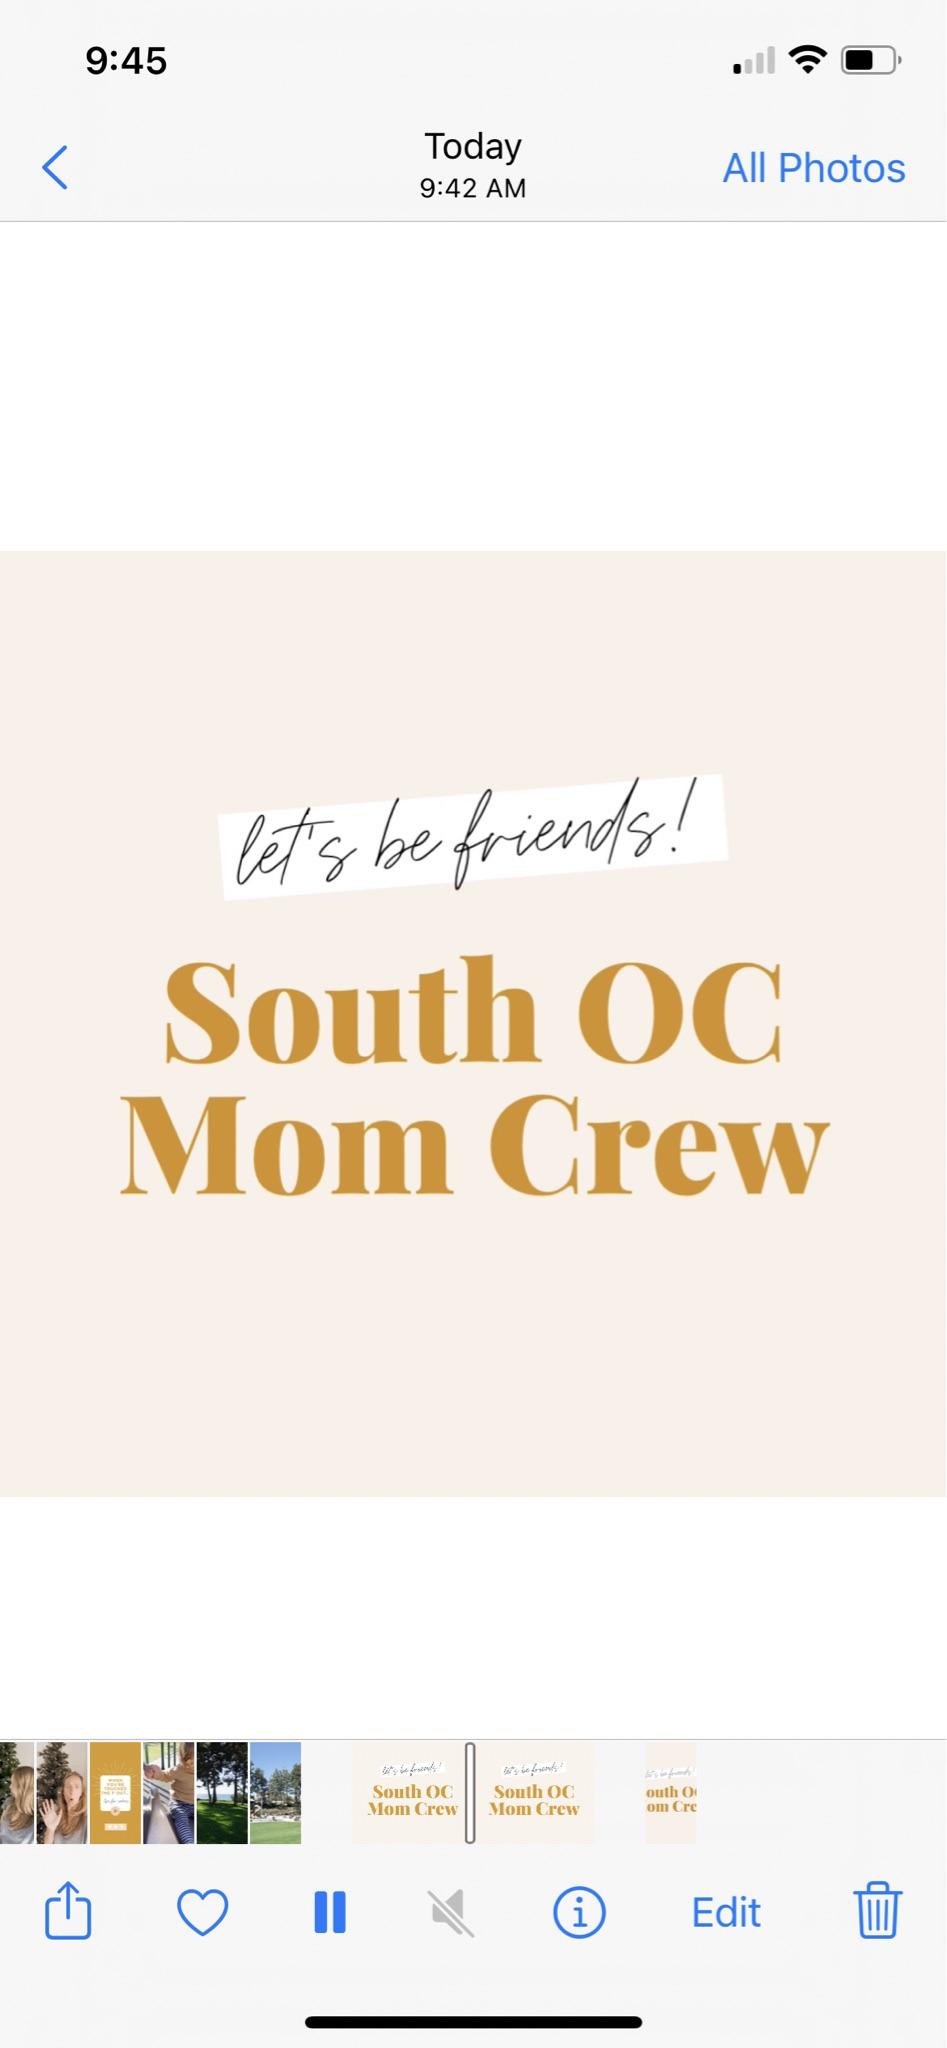 South OC Mom Crew